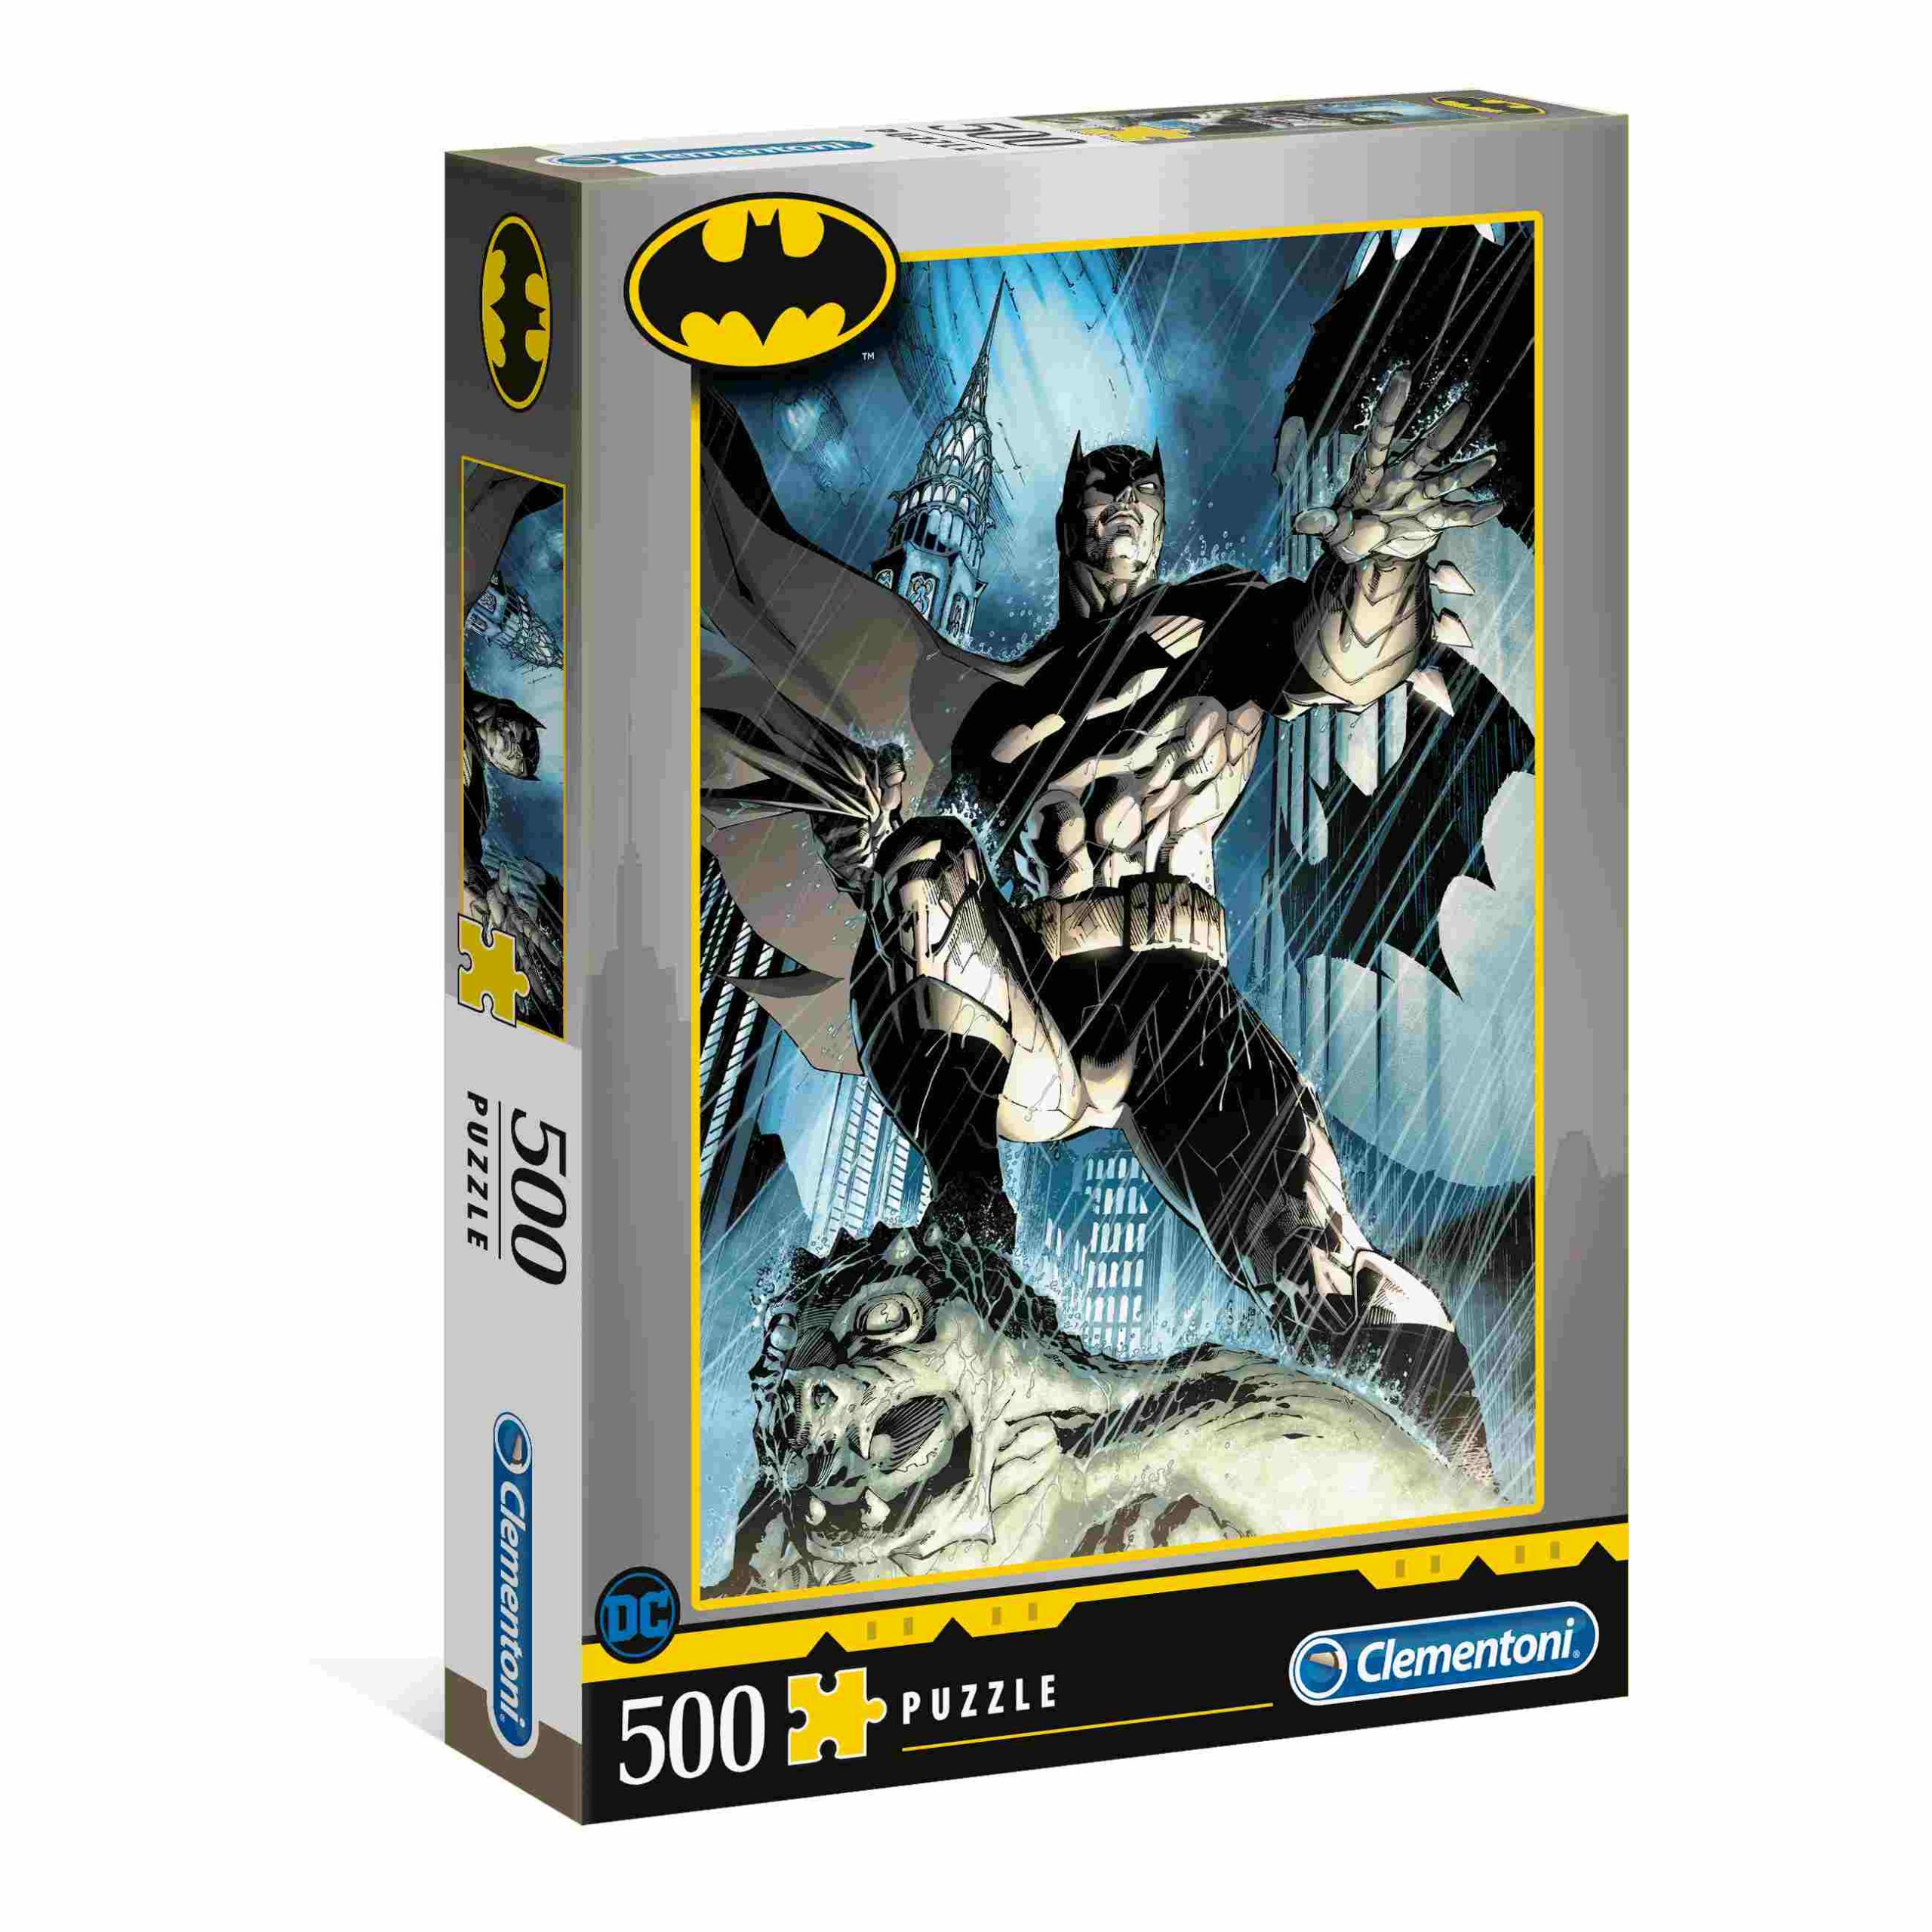 Clementoni - puzzle batman 500 pezzi - BATMAN, CLEMENTONI